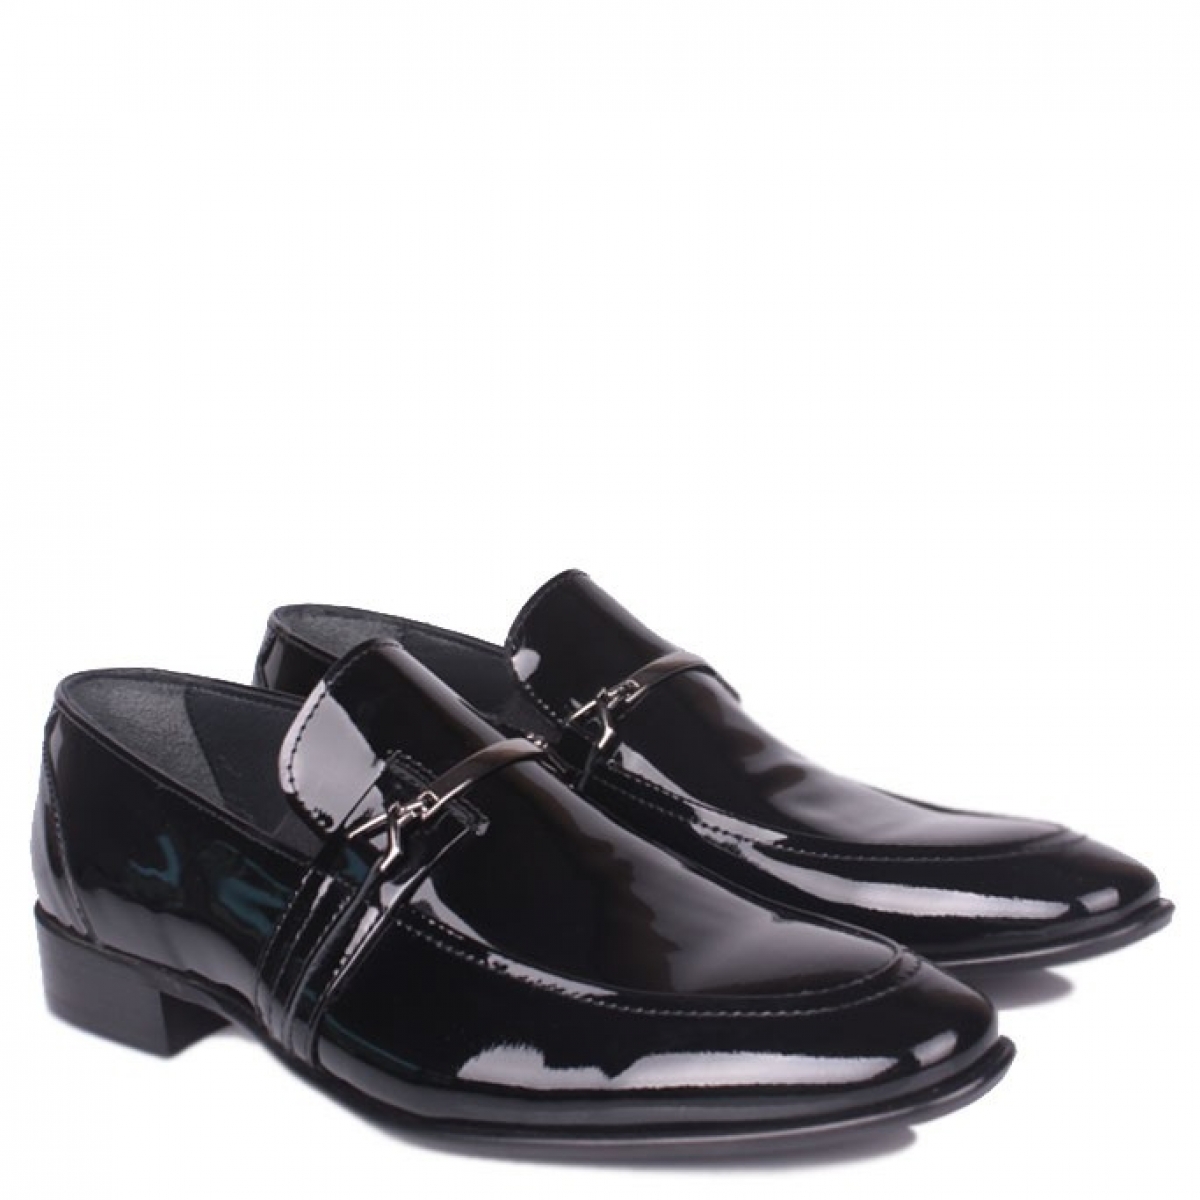 Flo - Erkan Kaban 972 020 Erkek Siyah Rugan Klasik Büyük & Küçük Numara Ayakkabı. 3